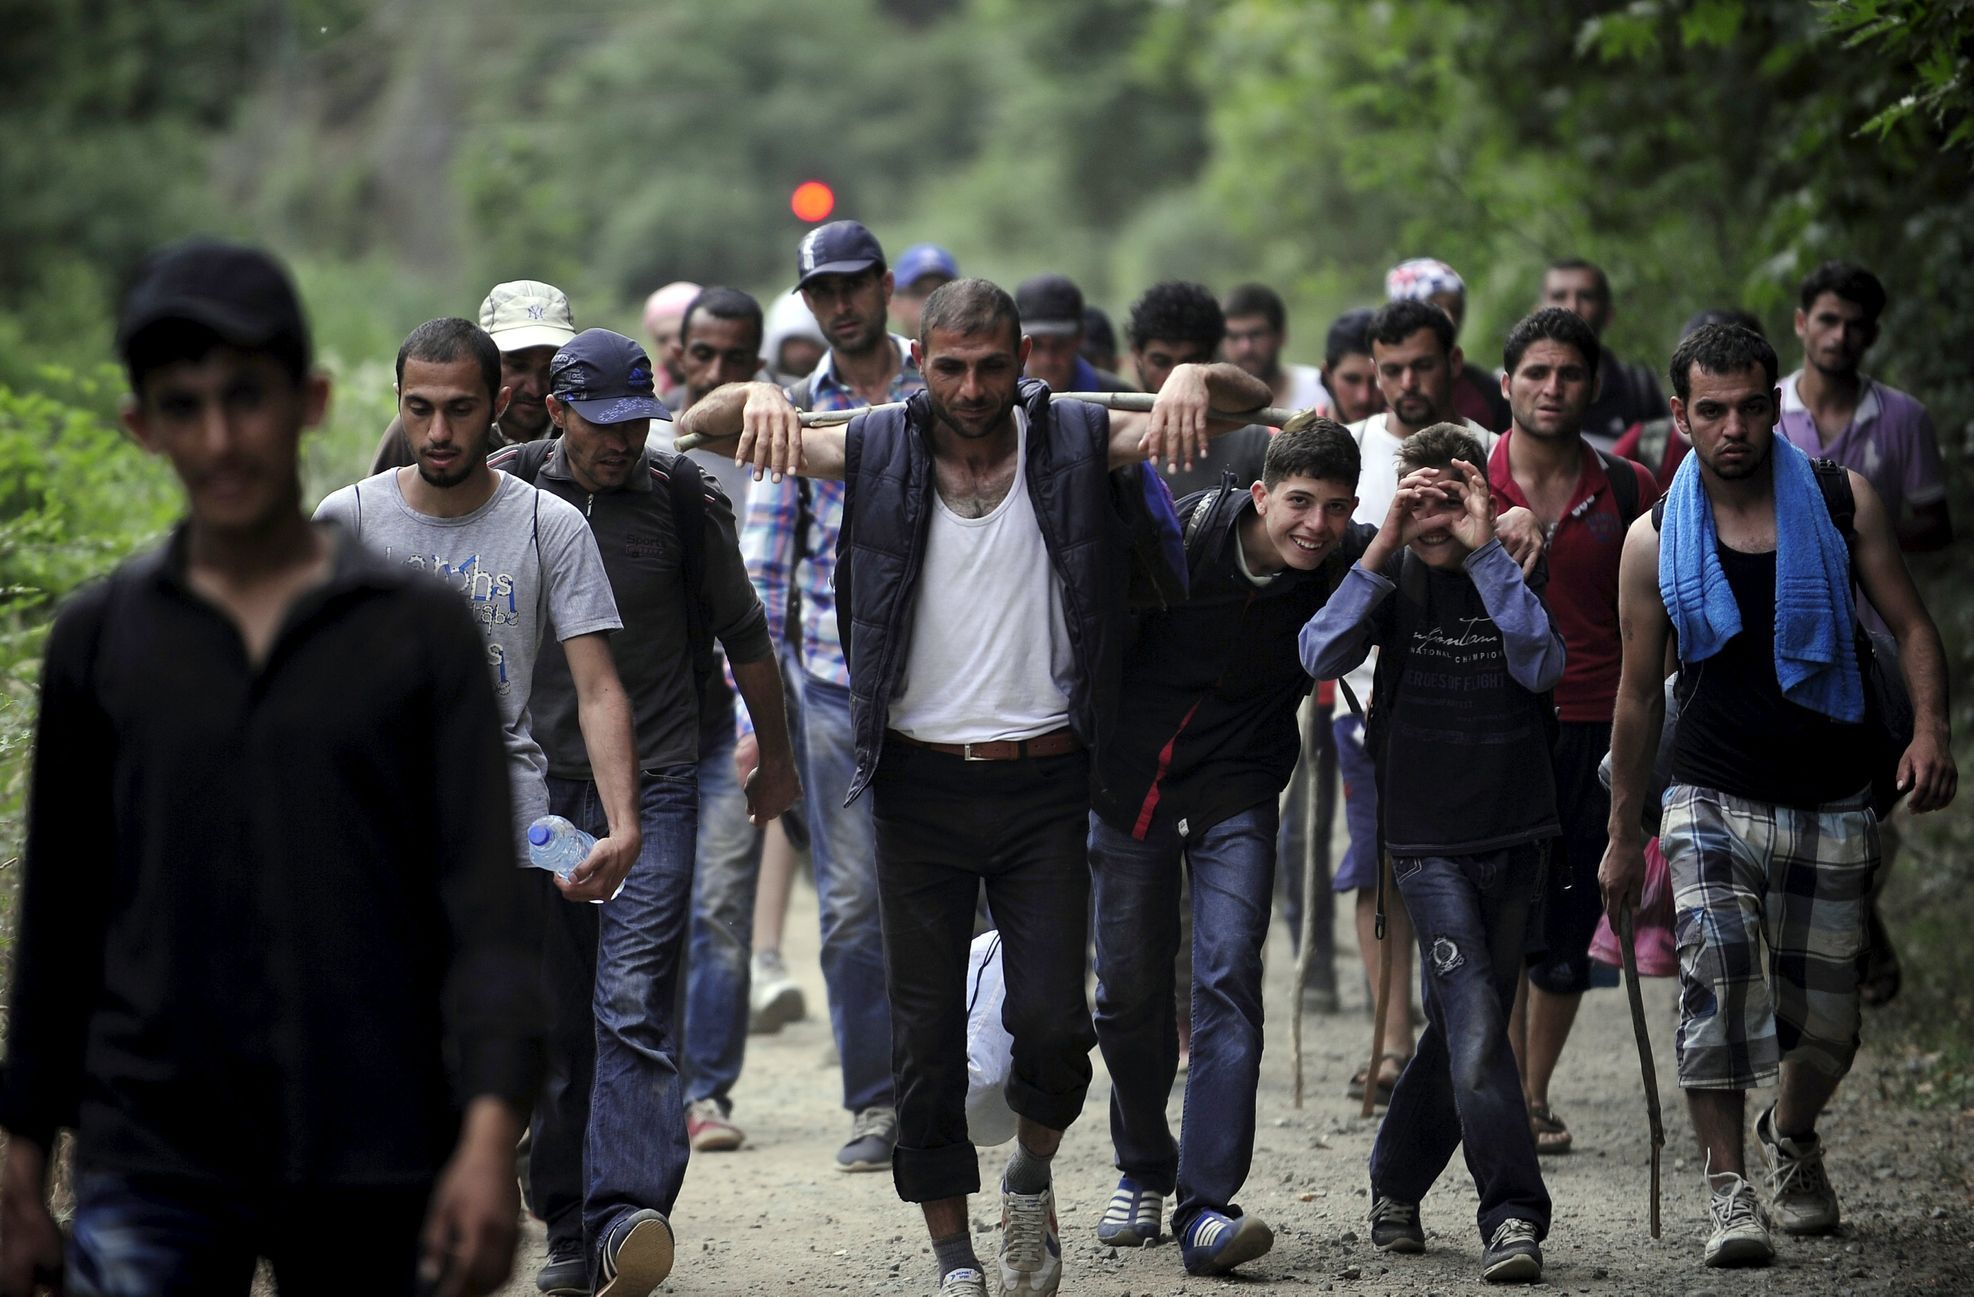 Makedonie - Cesta do Evropy - uprchlíci